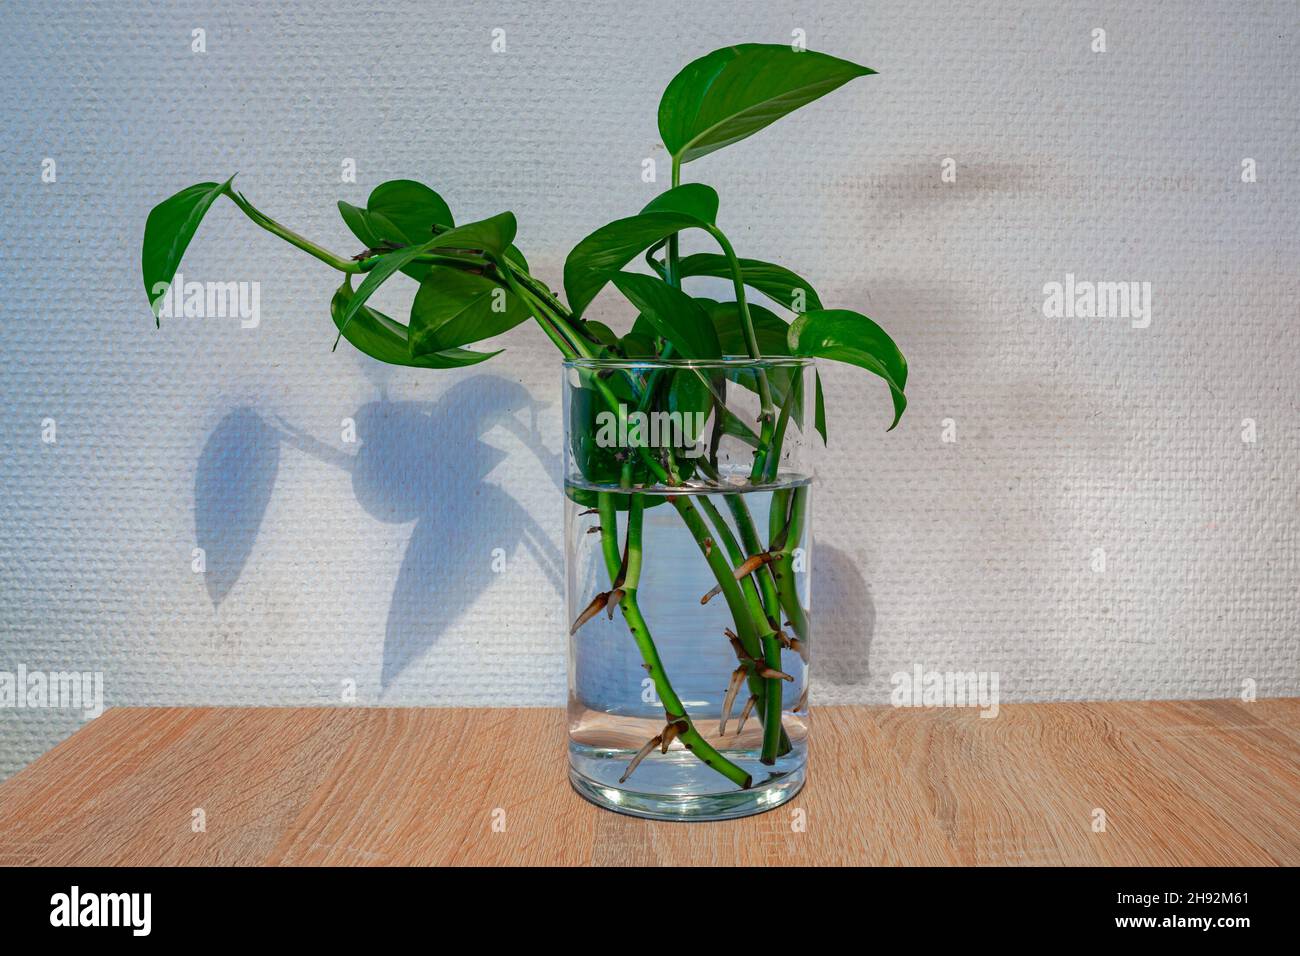 Facendo tagli. I gambi di una pianta sono messi in un vetro di acqua per parecchie settimane ed ottengono le radici nuove. Foto Stock